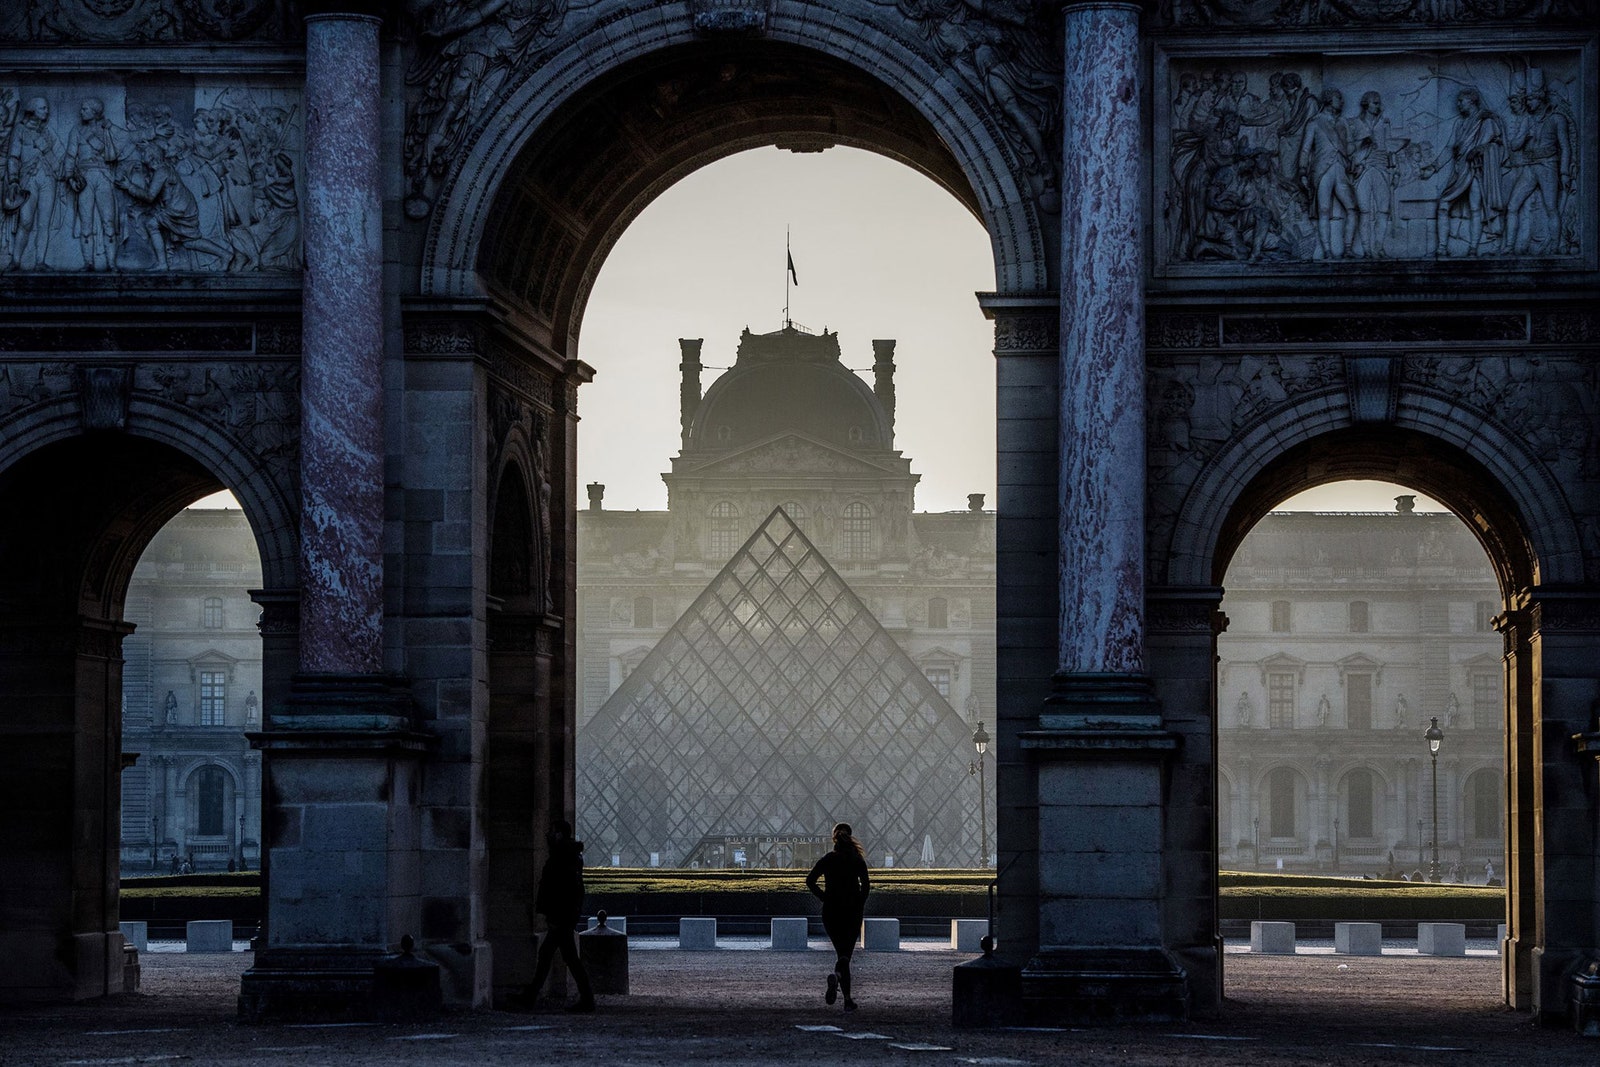 История создания и оптическая иллюзия стеклянной пирамиды Лувра